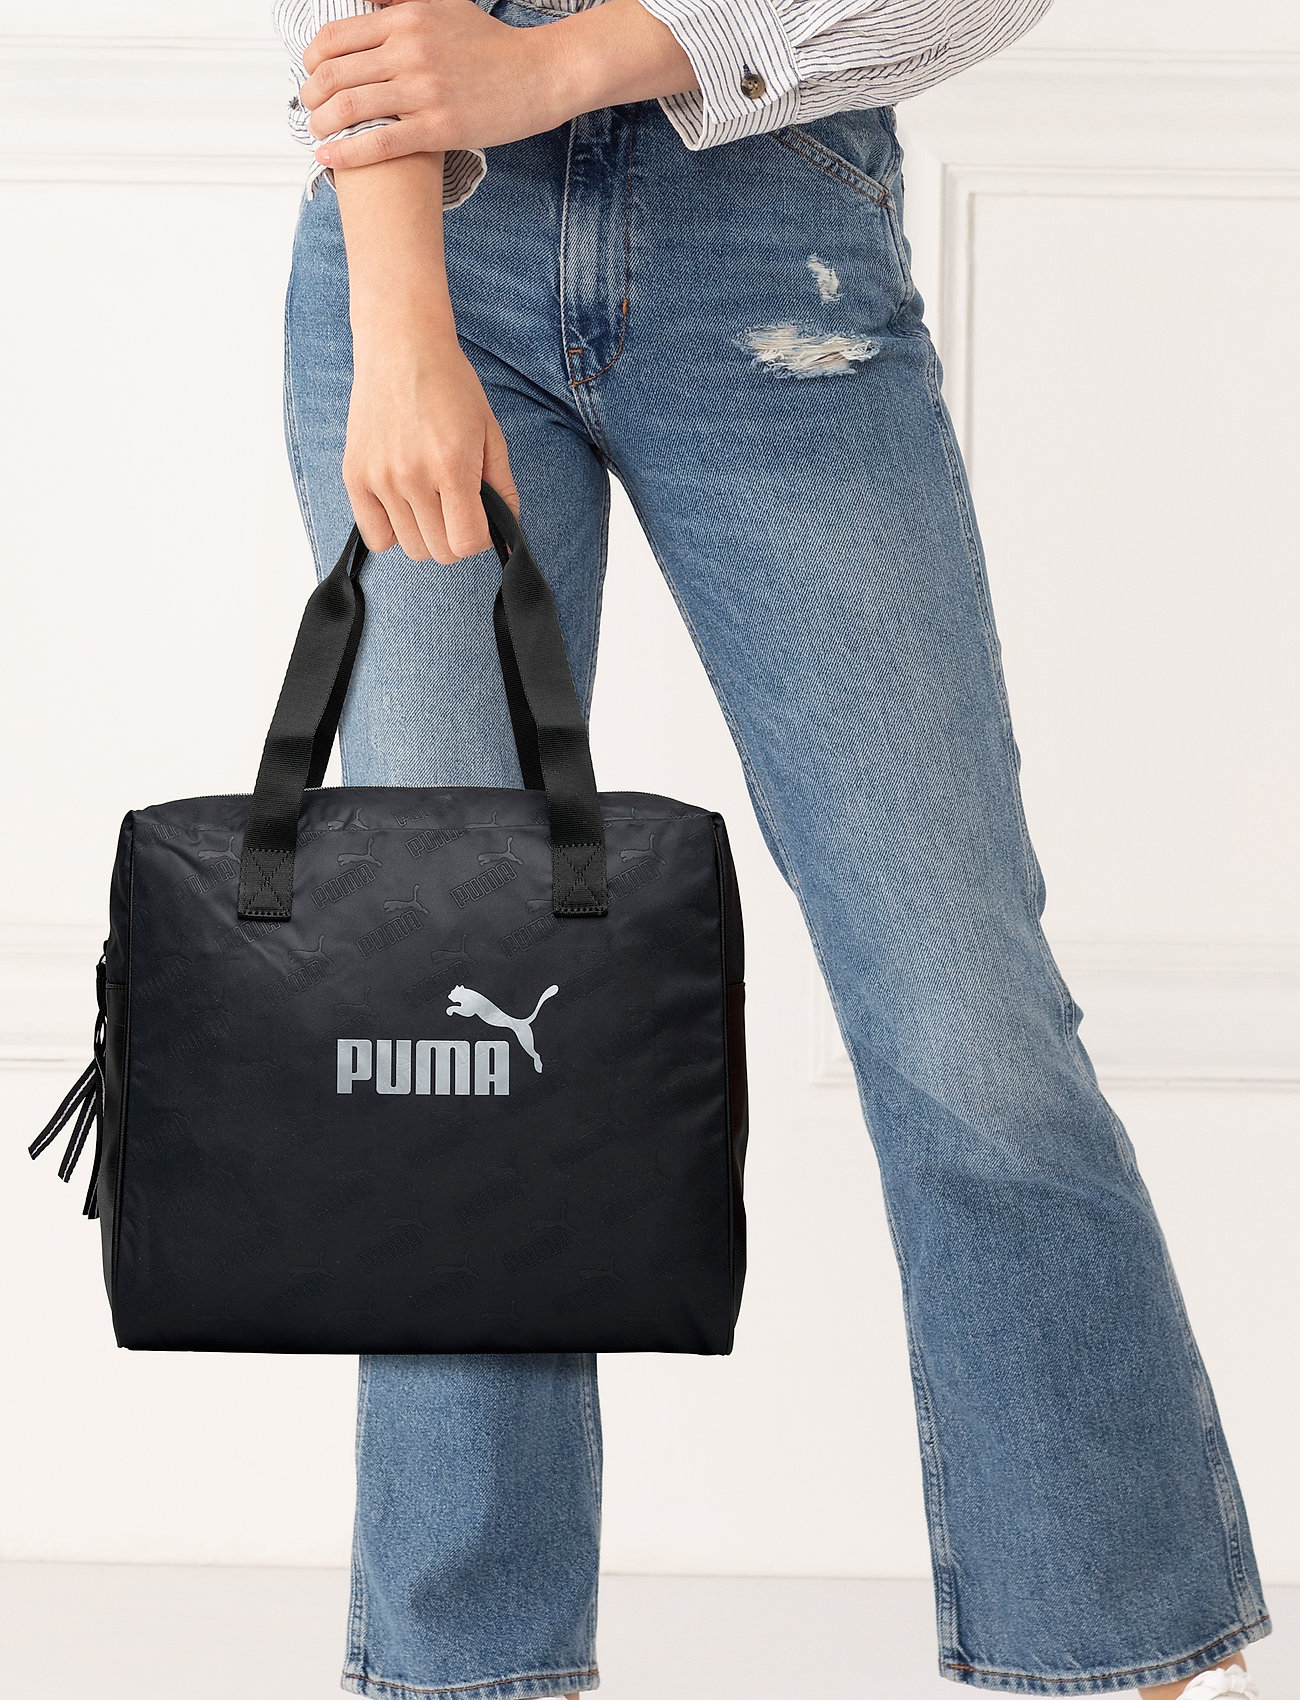 puma core style shopper